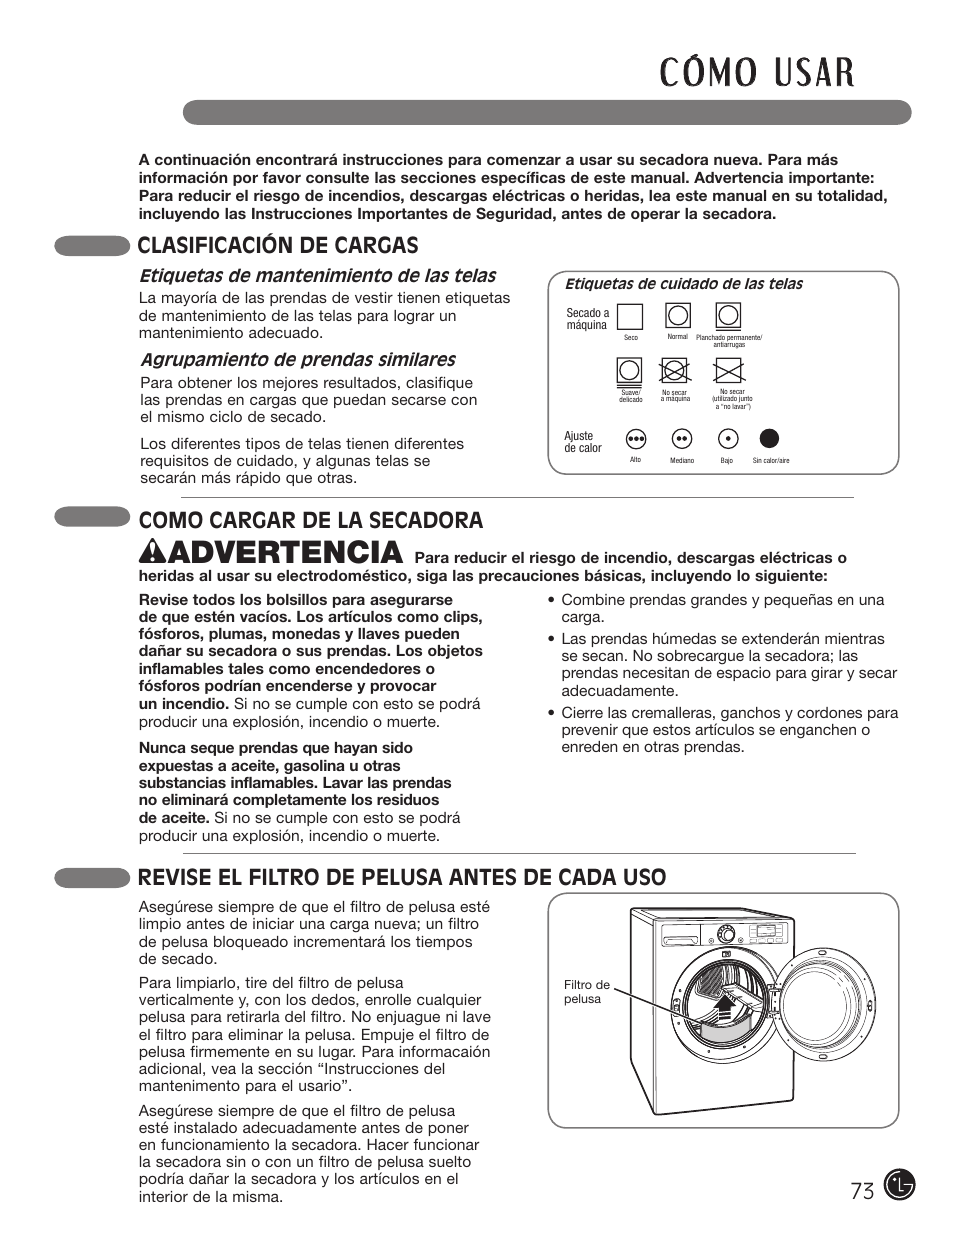 Wadvertencia, Como cargar de la secadora, Clasificación de cargas | Revise el filtro de pelusa antes de cada uso | LG DX0002TM User Manual | Page 73 / 144